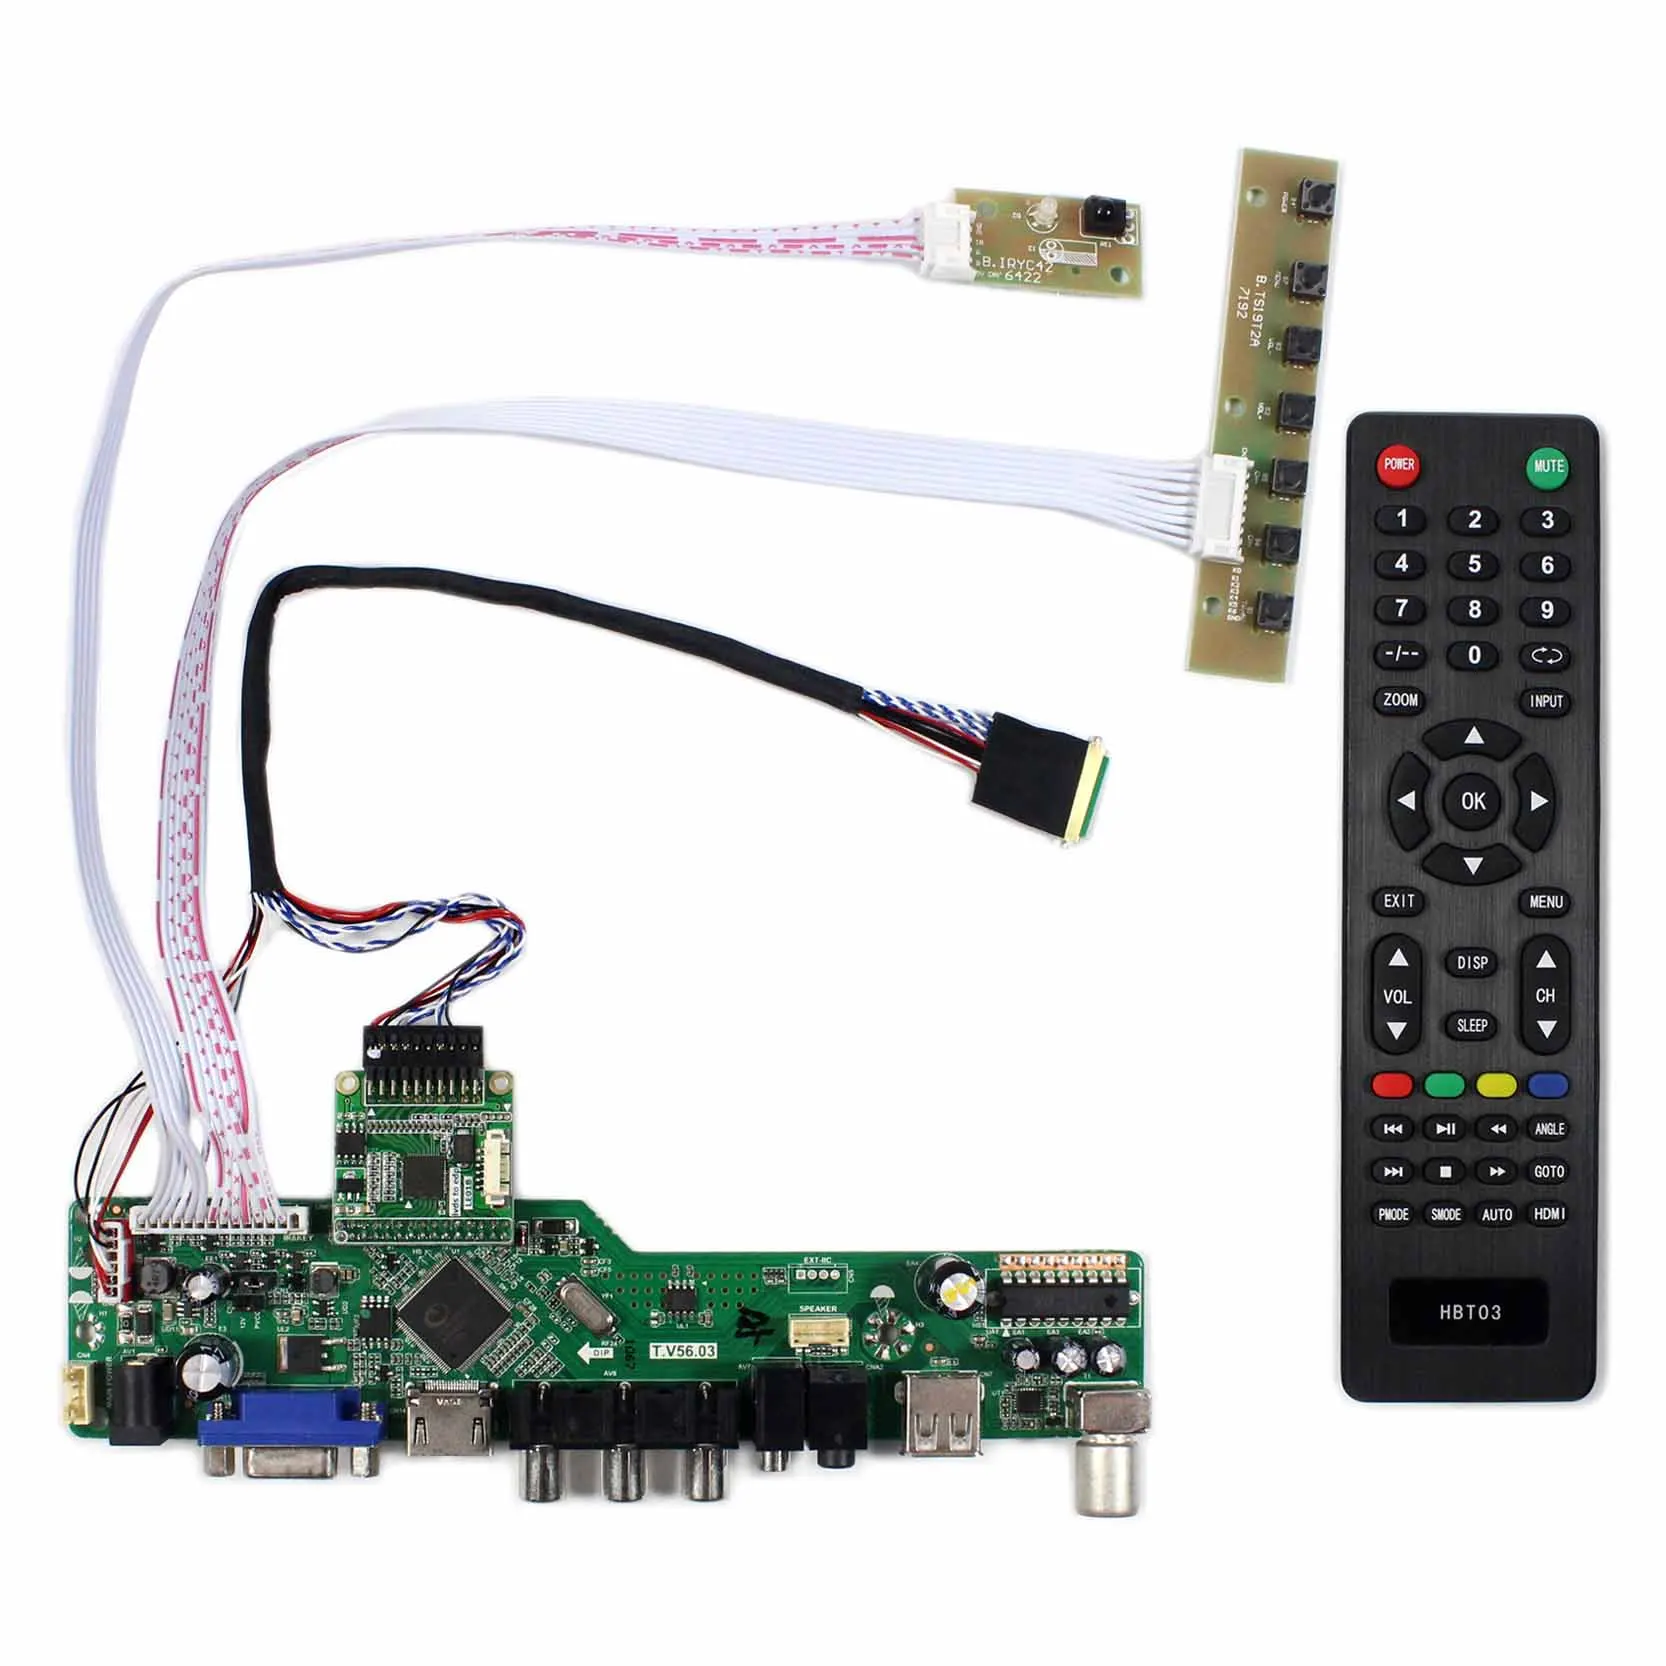 

HD MI VGA AV USB RF LCD Controller Board T.V56.03 work for N116HSE-EA1 N116HSE-EJ1 N116HSE-EB1 N116HSE-EAC N116HSE-EBC